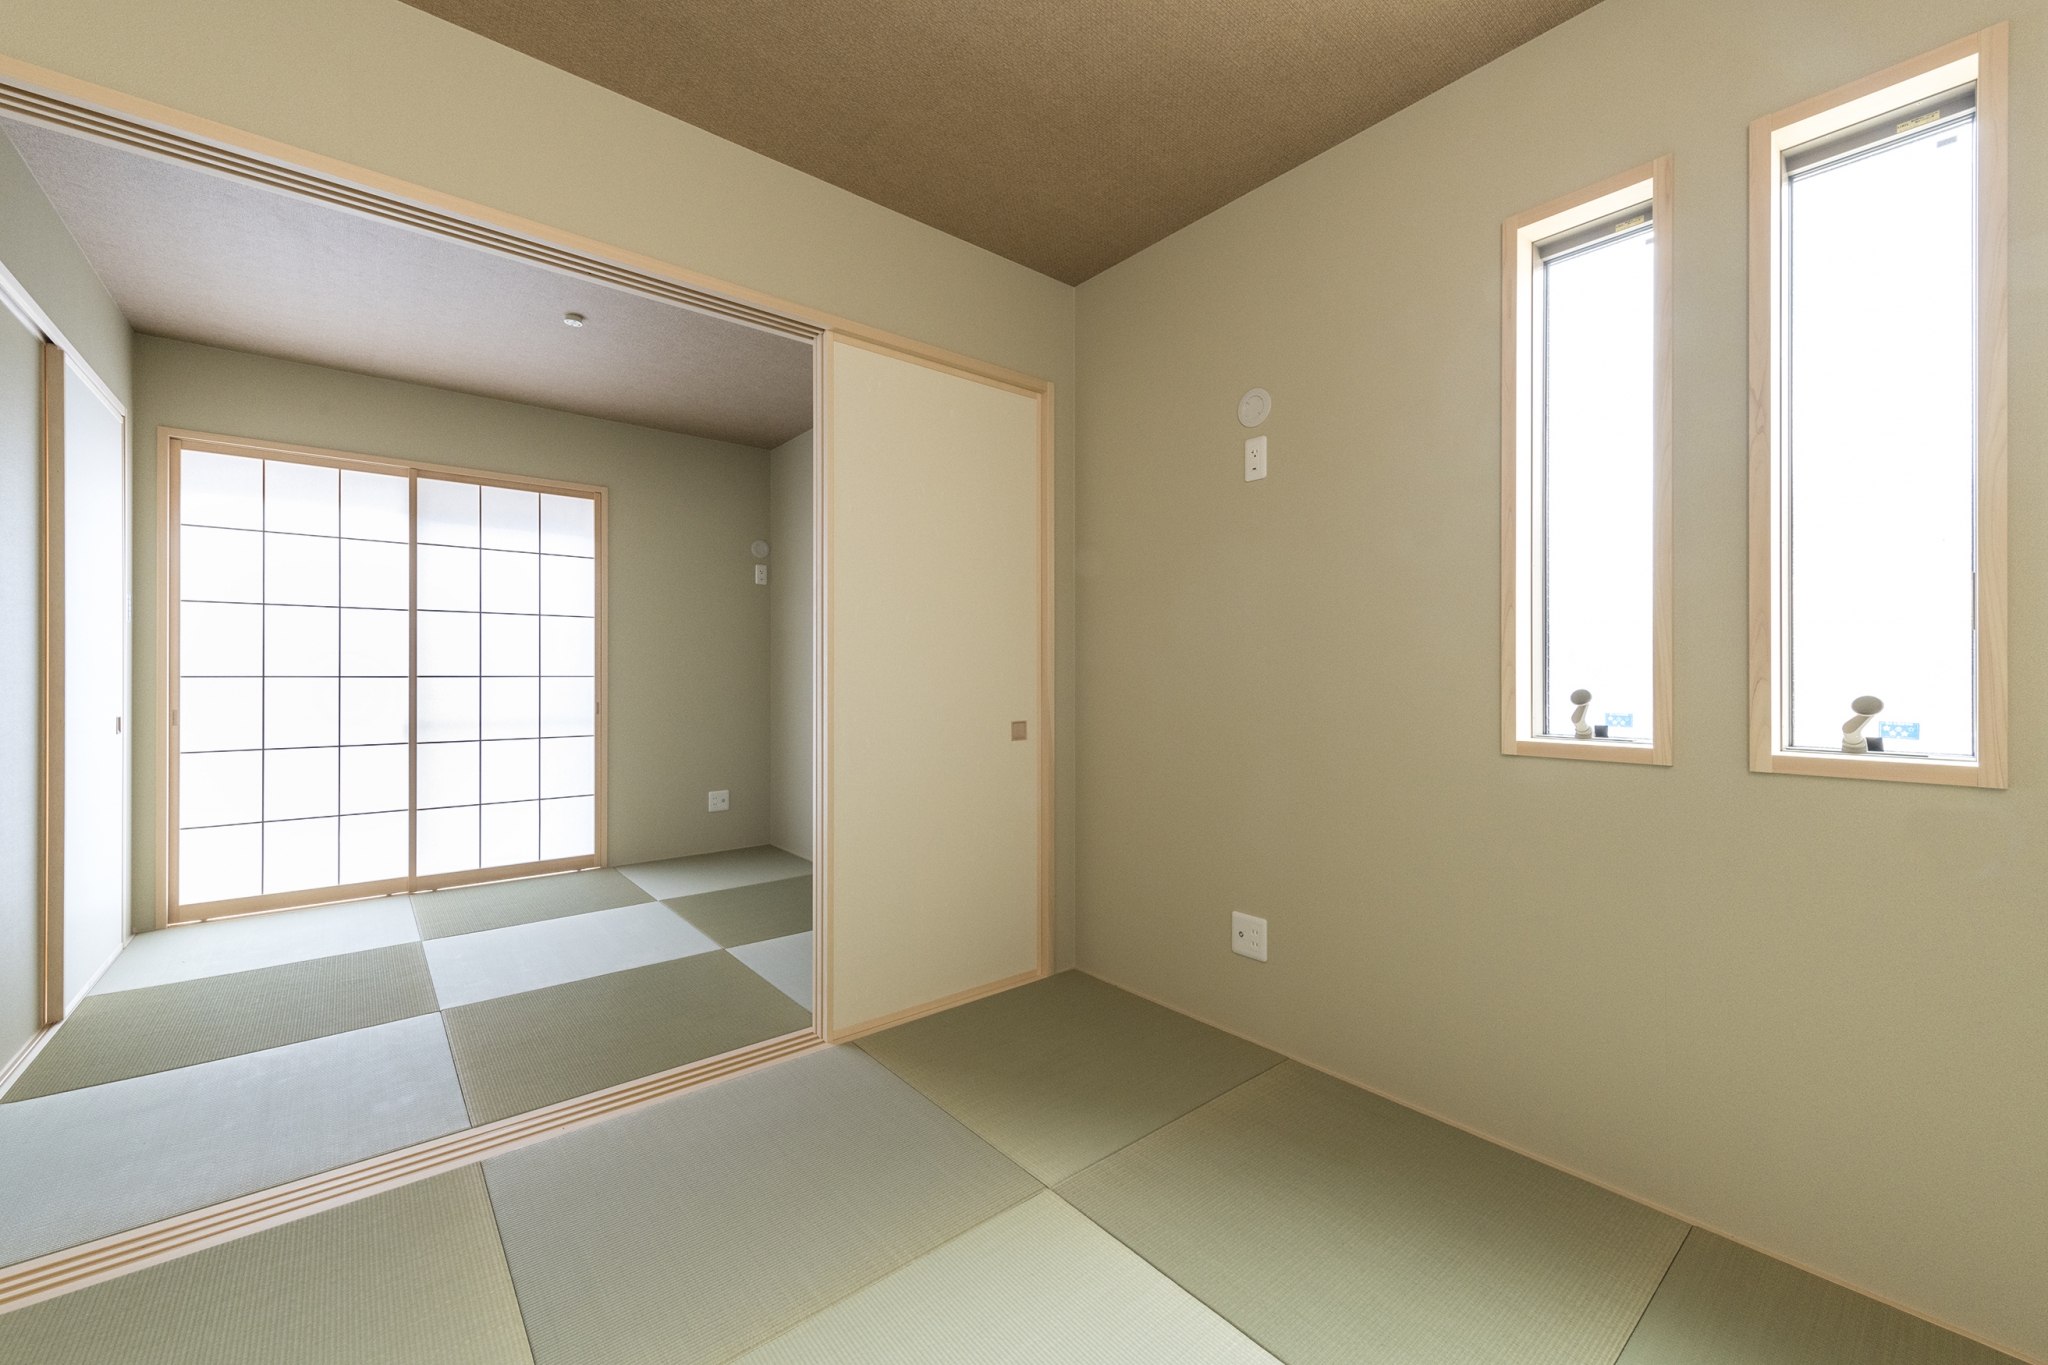 名古屋市南区の注文住宅の和モダンのシンプルで明るいデザインの和室